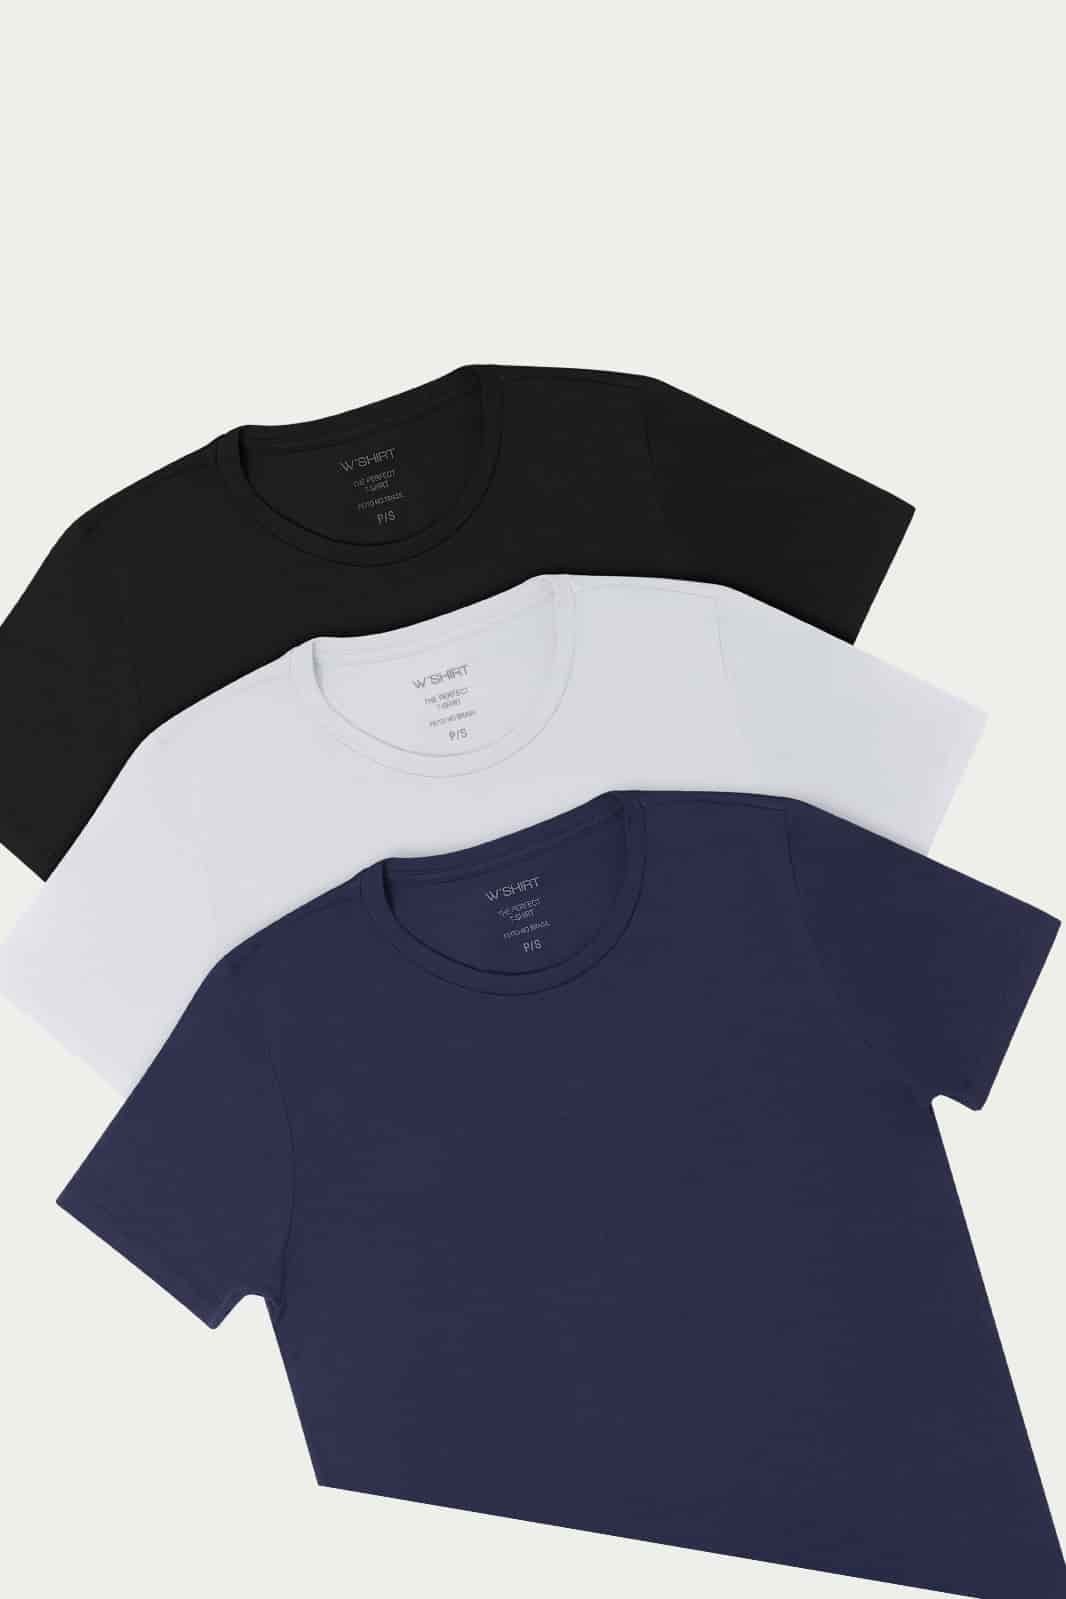 Kit 1 - Camiseta Básica Algodão Premium Gola C 3 cores